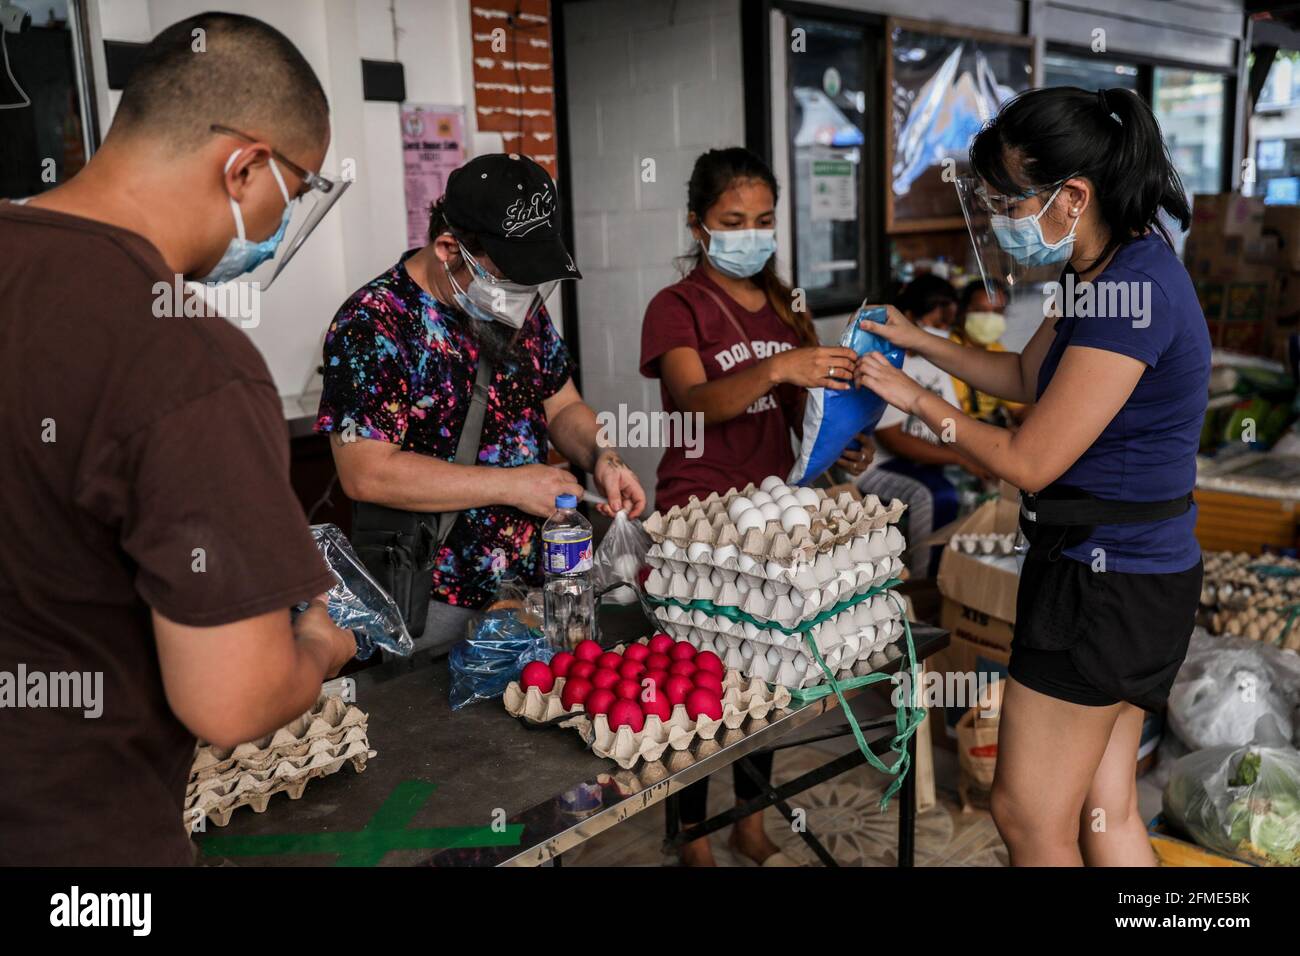 Freiwillige bereiten Lebensmittelspenden in einer Gemeinschaftsküche im Viertel Maginhawa in Quezon City vor. Trotz der Behauptungen von Gesetzeshütern als kommunistische Untergrundorganisationen, die die Regierung untergraben wollen, sind in der vergangenen Woche im ganzen Land Gemeindelandschaften aufgekommen, um Menschen zu helfen, die von strengen Quarantänemaßnahmen betroffen sind, um die Ausbreitung der Coronavirus-Krankheit einzudämmen. Metro Manila, Philippinen. Stockfoto